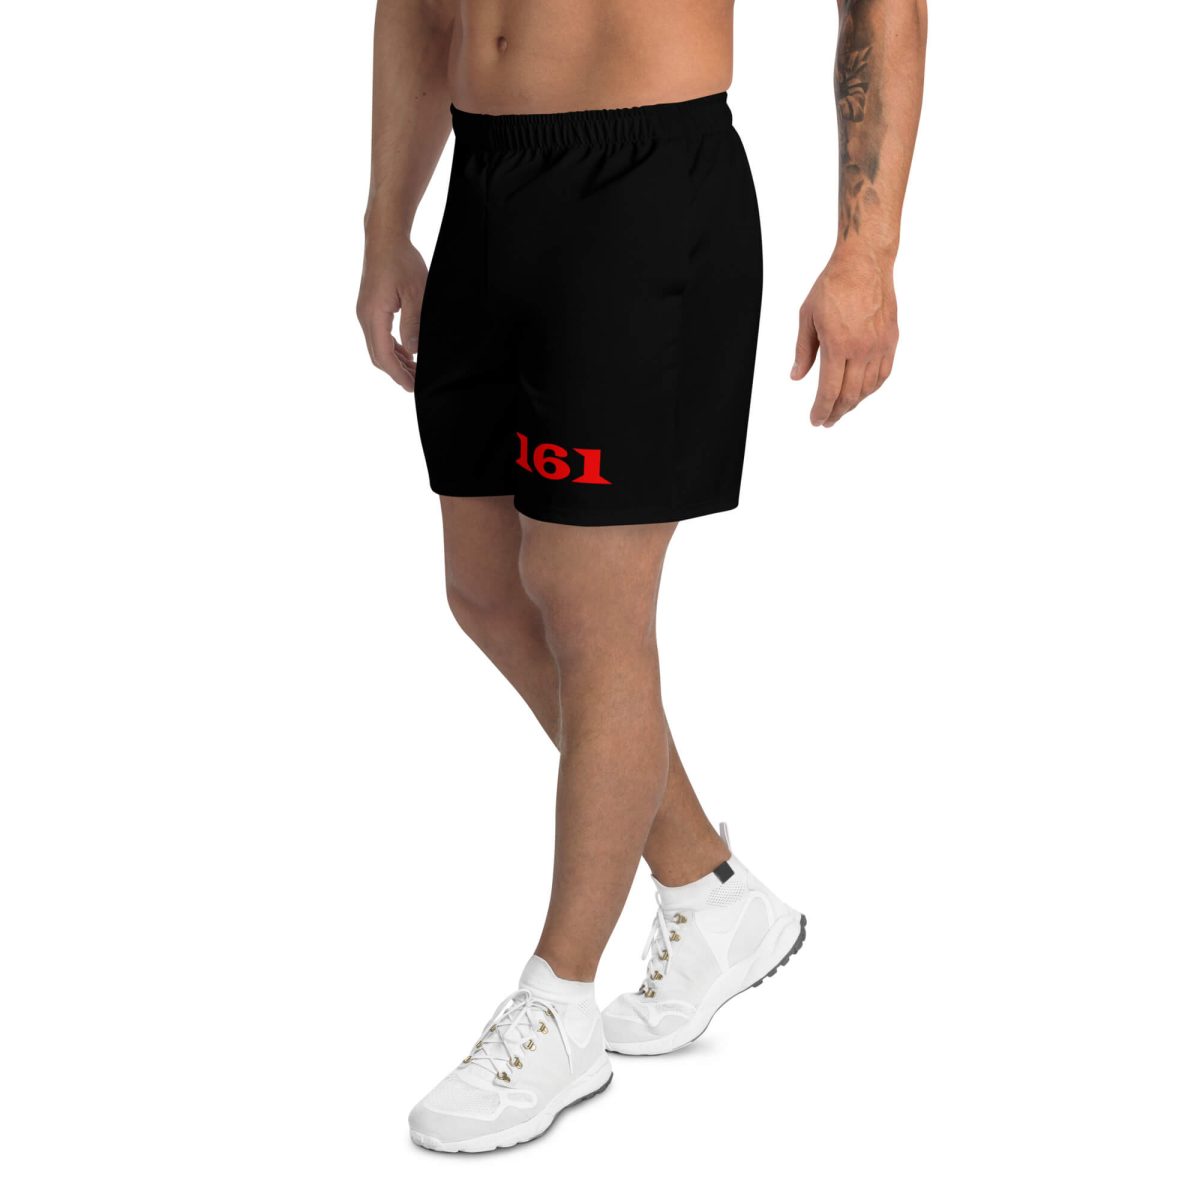 161 AFA Red Men's Long Shorts